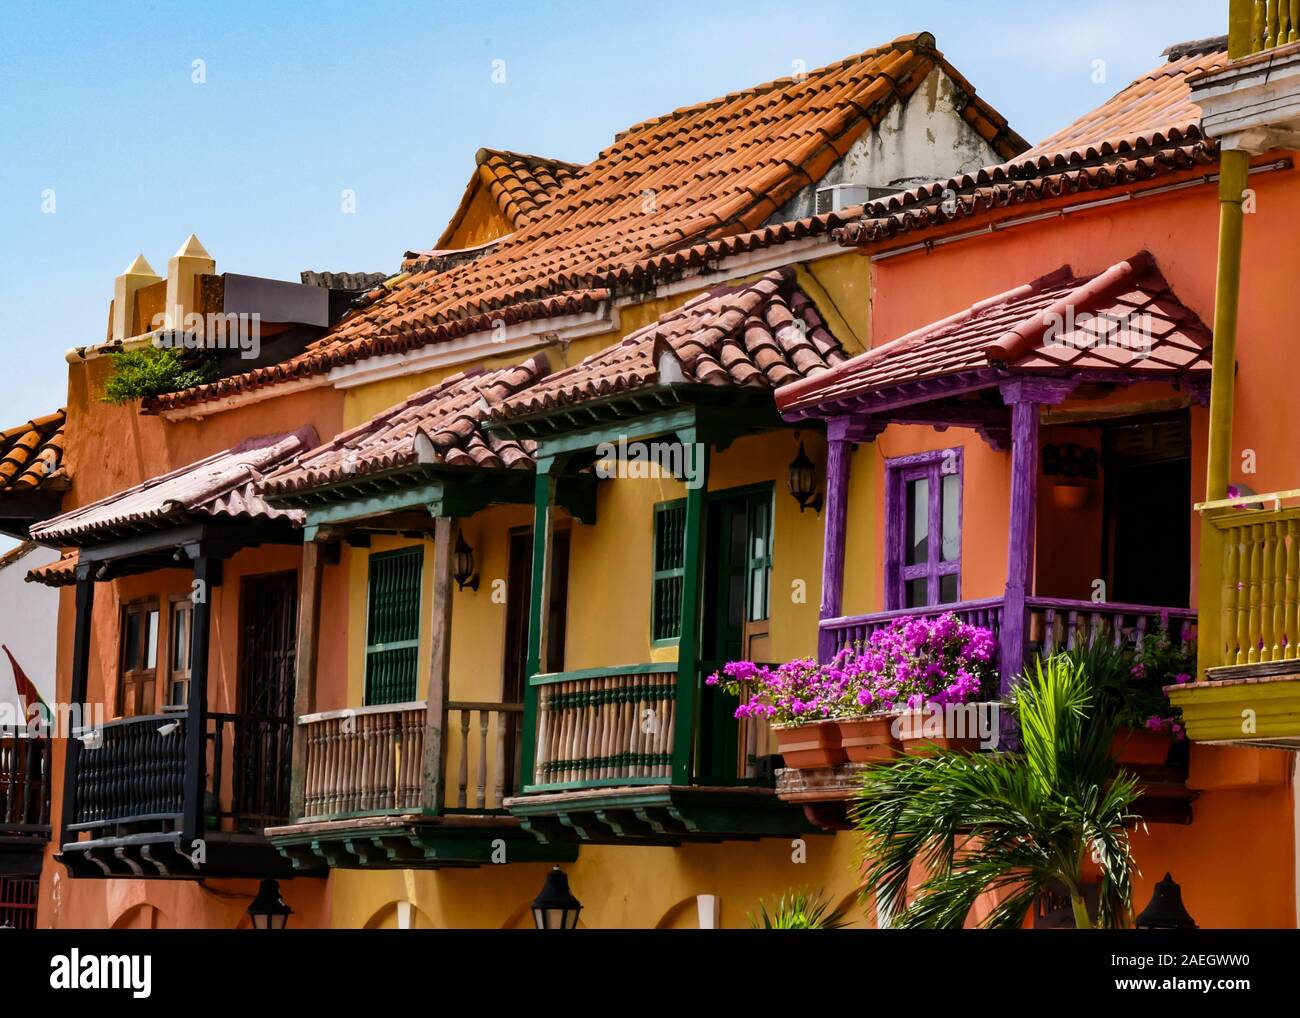 Schöne und farbenfrohe Architektur in der Plaza de los Coches in Cartagena. Nette Balkons mit Blumen Stockfoto